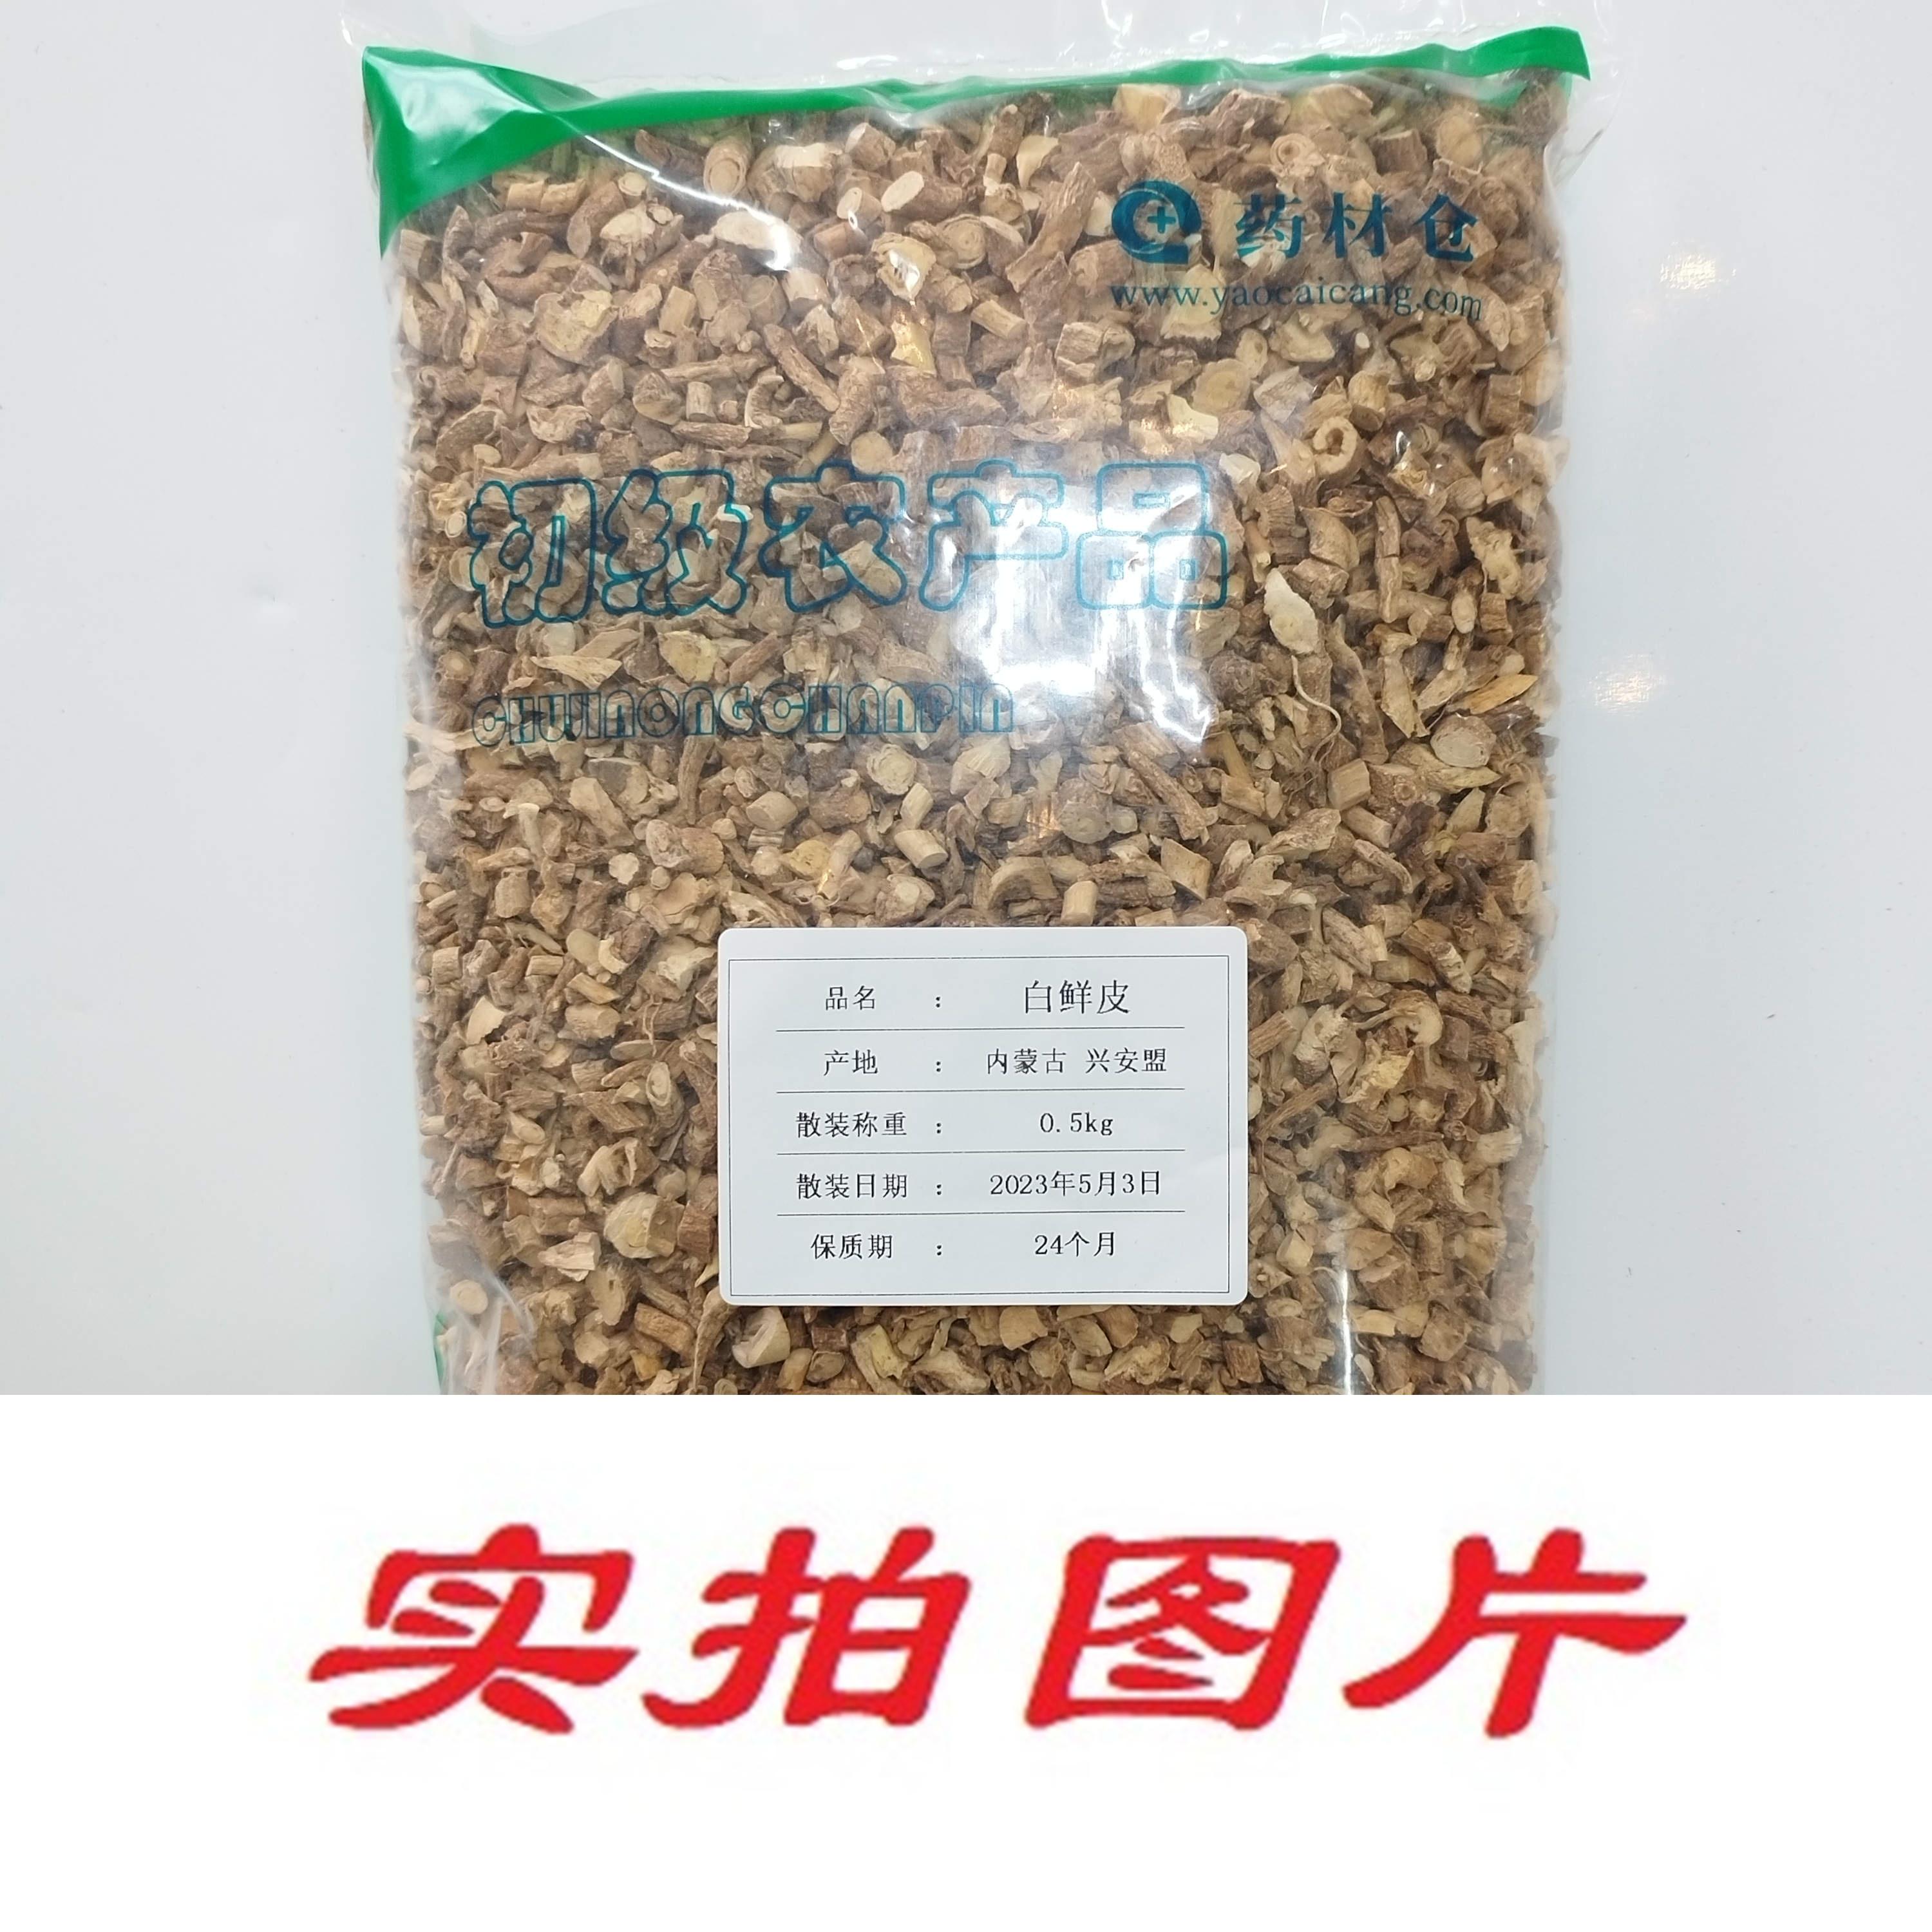 【】白鲜皮0.5kg-农副产品